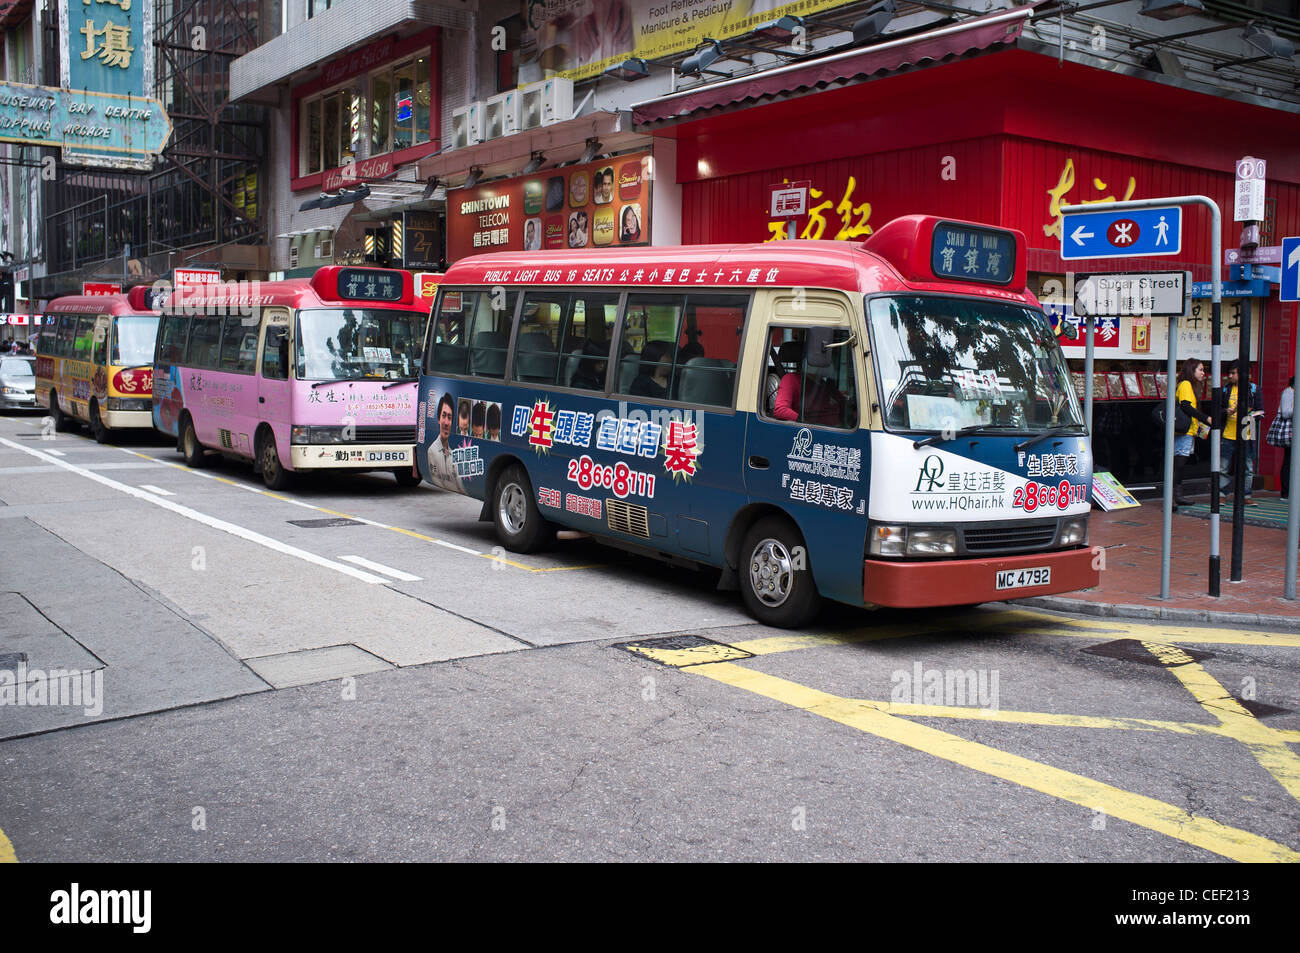 dh autobus légers CAUSEWAY BAY HONG KONG minibus rouge avec la calligraphie chinoise publicités mini bus asiatique transport île Banque D'Images